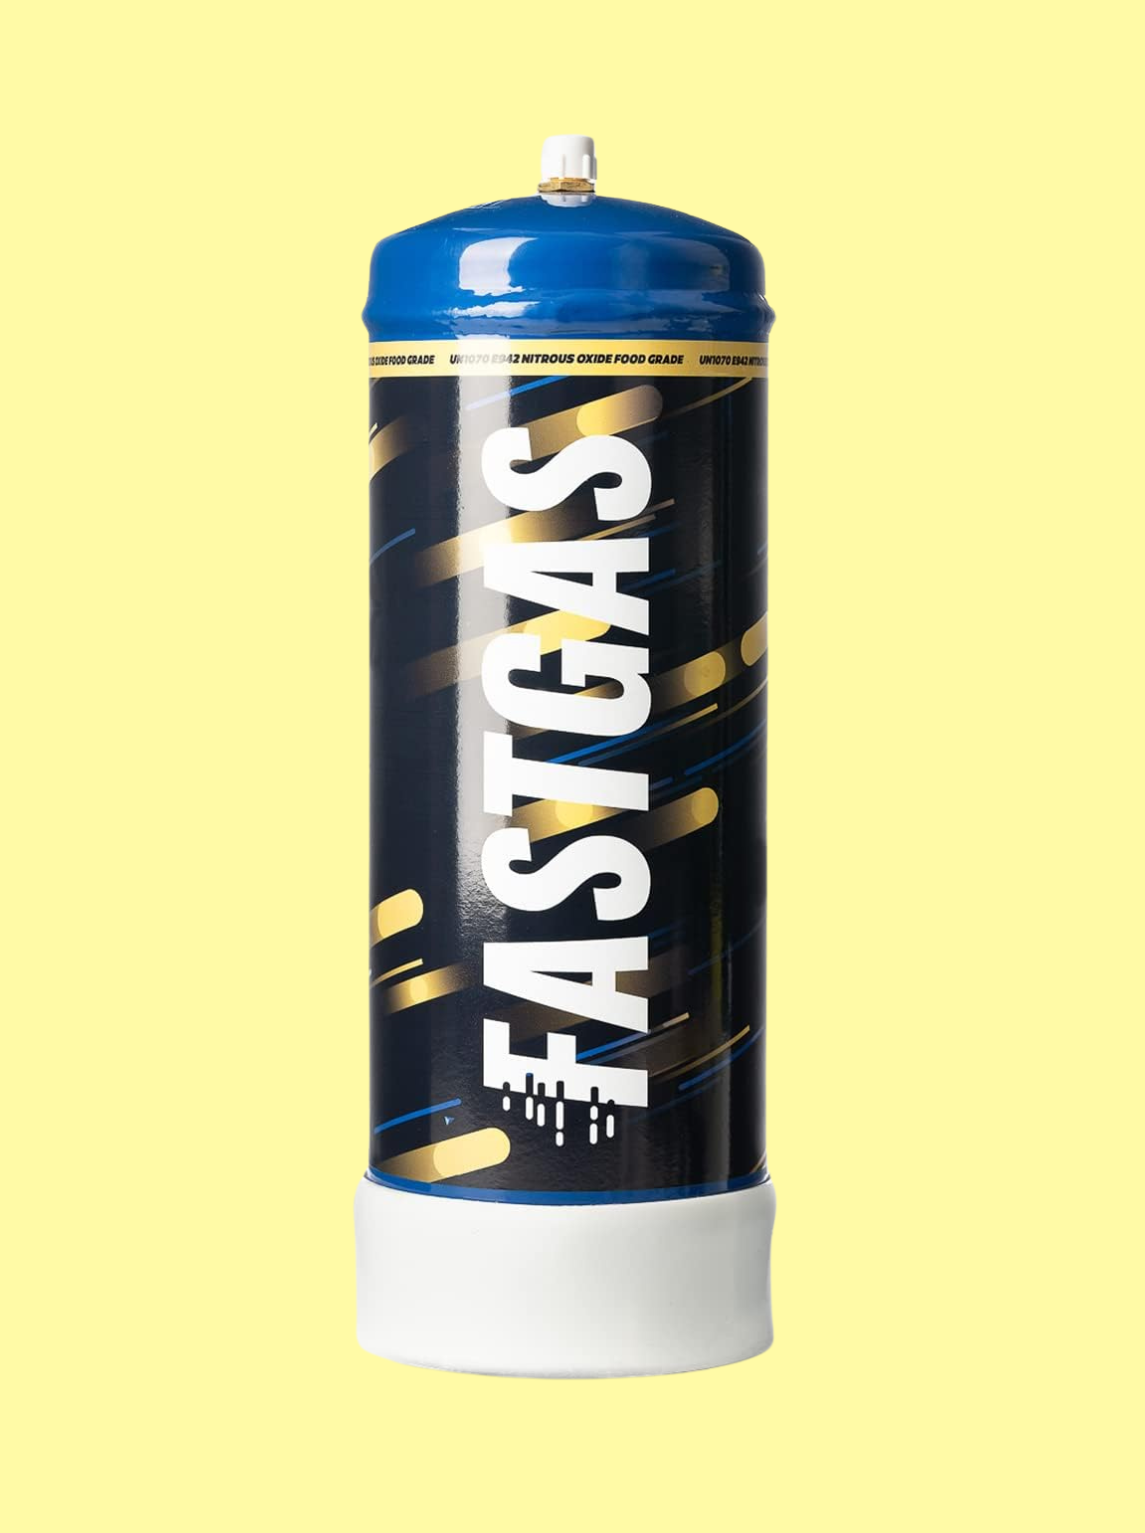 Die Gasflasche ist schwarz mit dem weißen Logo "Fastgas" 1,2kg. Der Oberteil ist blau, der Unterteil weiß und die Flasche auch blau, gelb gestreift. Der Hintergrund ist hellgelb.